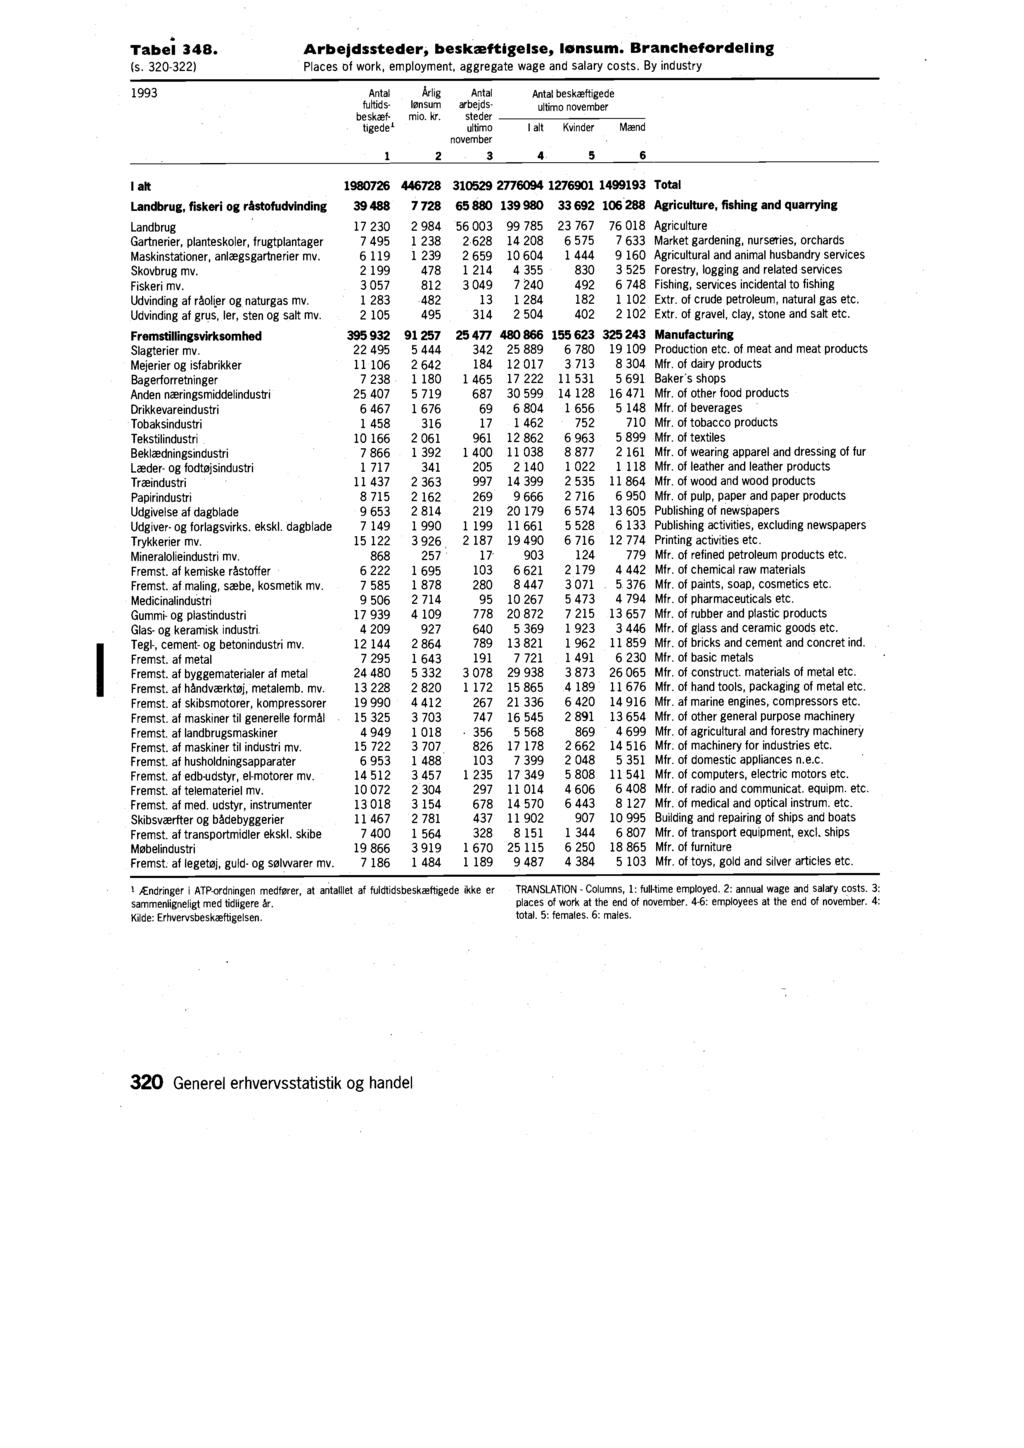 Tabel 348. (s. 320-322) Arbejdssteder, beskæftigelse, lønsum. Branchefordeling Places of work, employment, aggregate wage and salary costs.